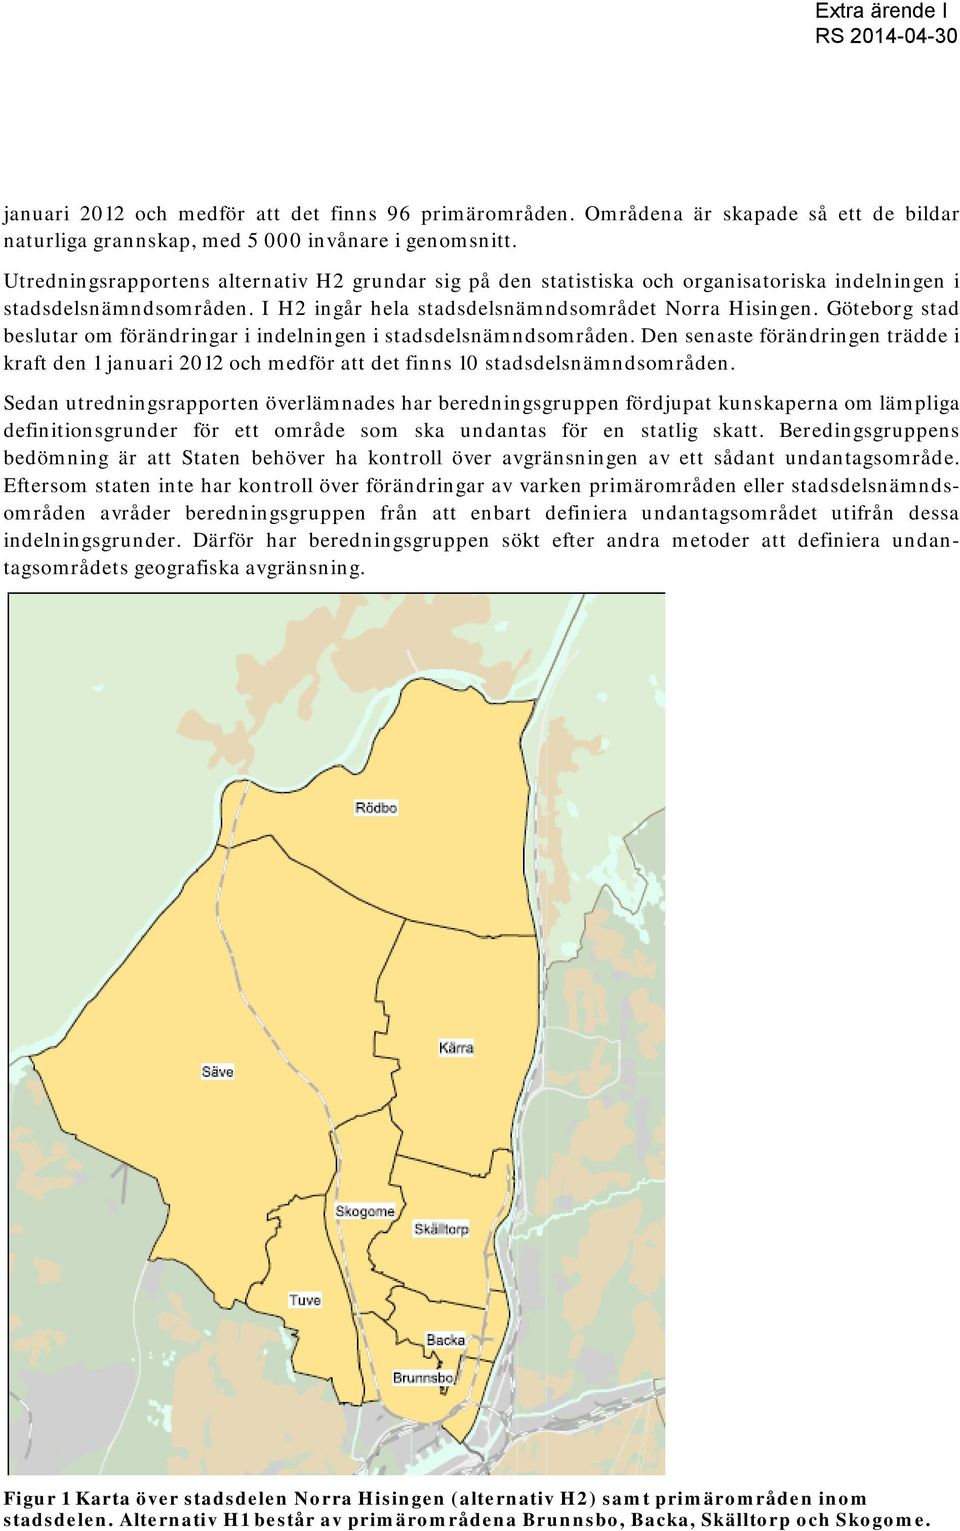 Göteborg stad beslutar om förändringar i indelningen i stadsdelsnämndsområden. Den senaste förändringen trädde i kraft den 1 januari 2012 och medför att det finns 10 stadsdelsnämndsområden.